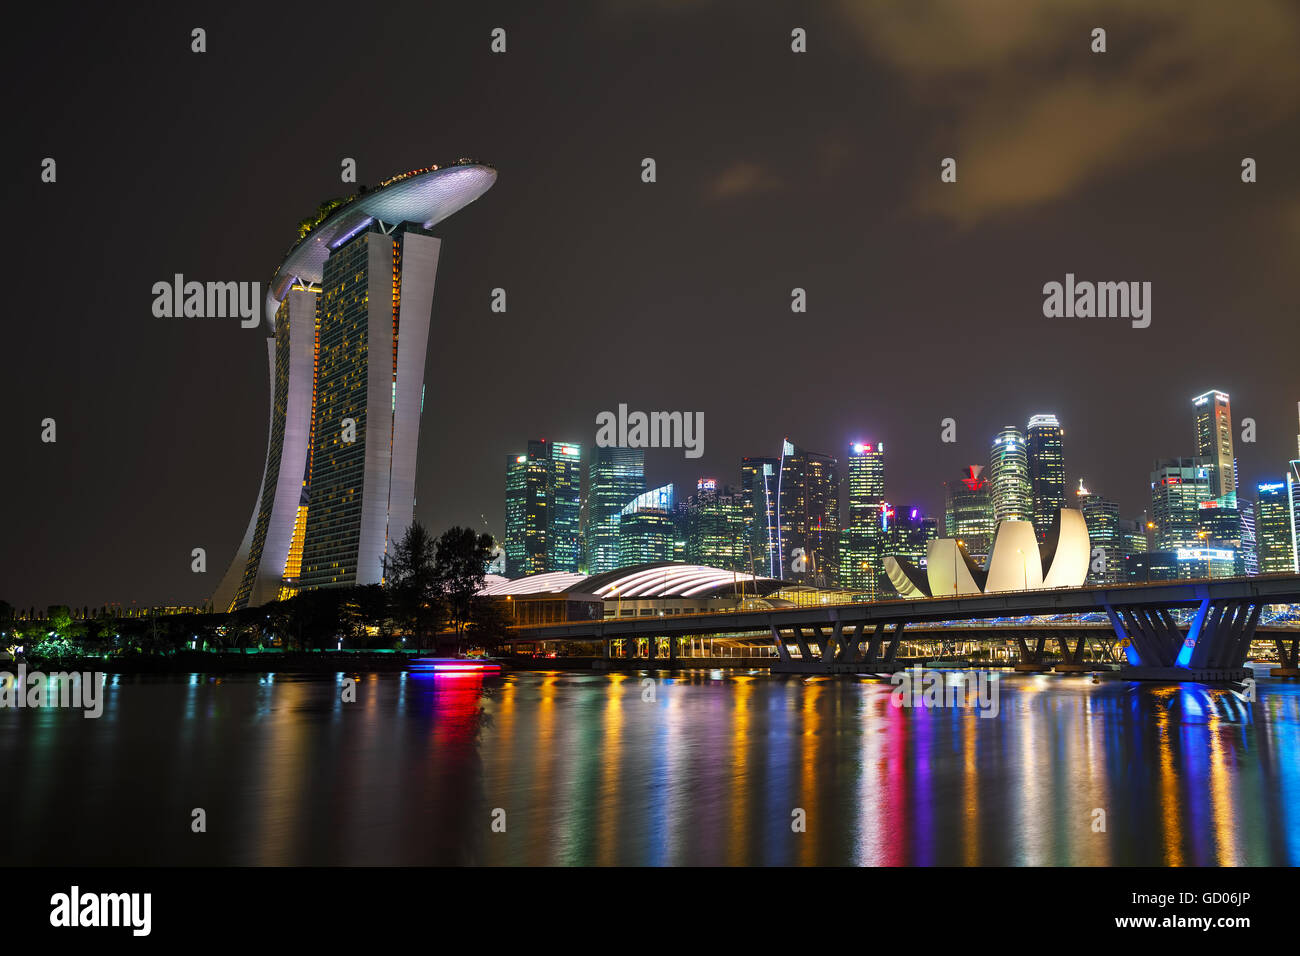 SINGAPORE - 6 novembre: Panoramica della marina bay con il Marina Bay Sands il 6 novembre 2015 a Singapore. Foto Stock